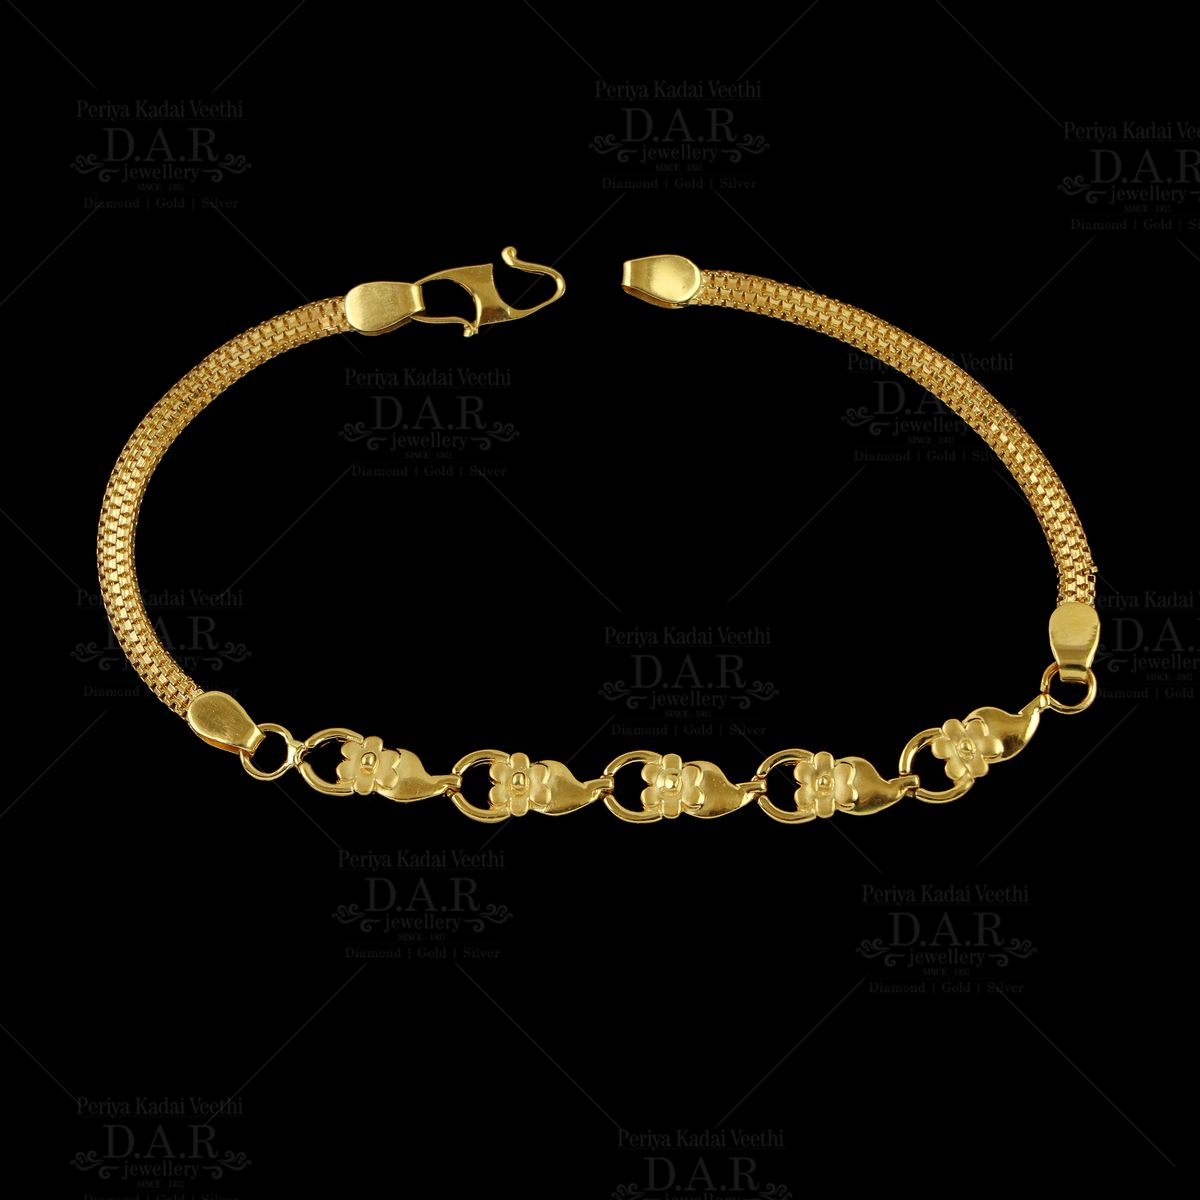 TOP 20 Gold Bracelet Designs For Women | Light weight Bangle/Bracelet  designs #Goldpot - YouTube